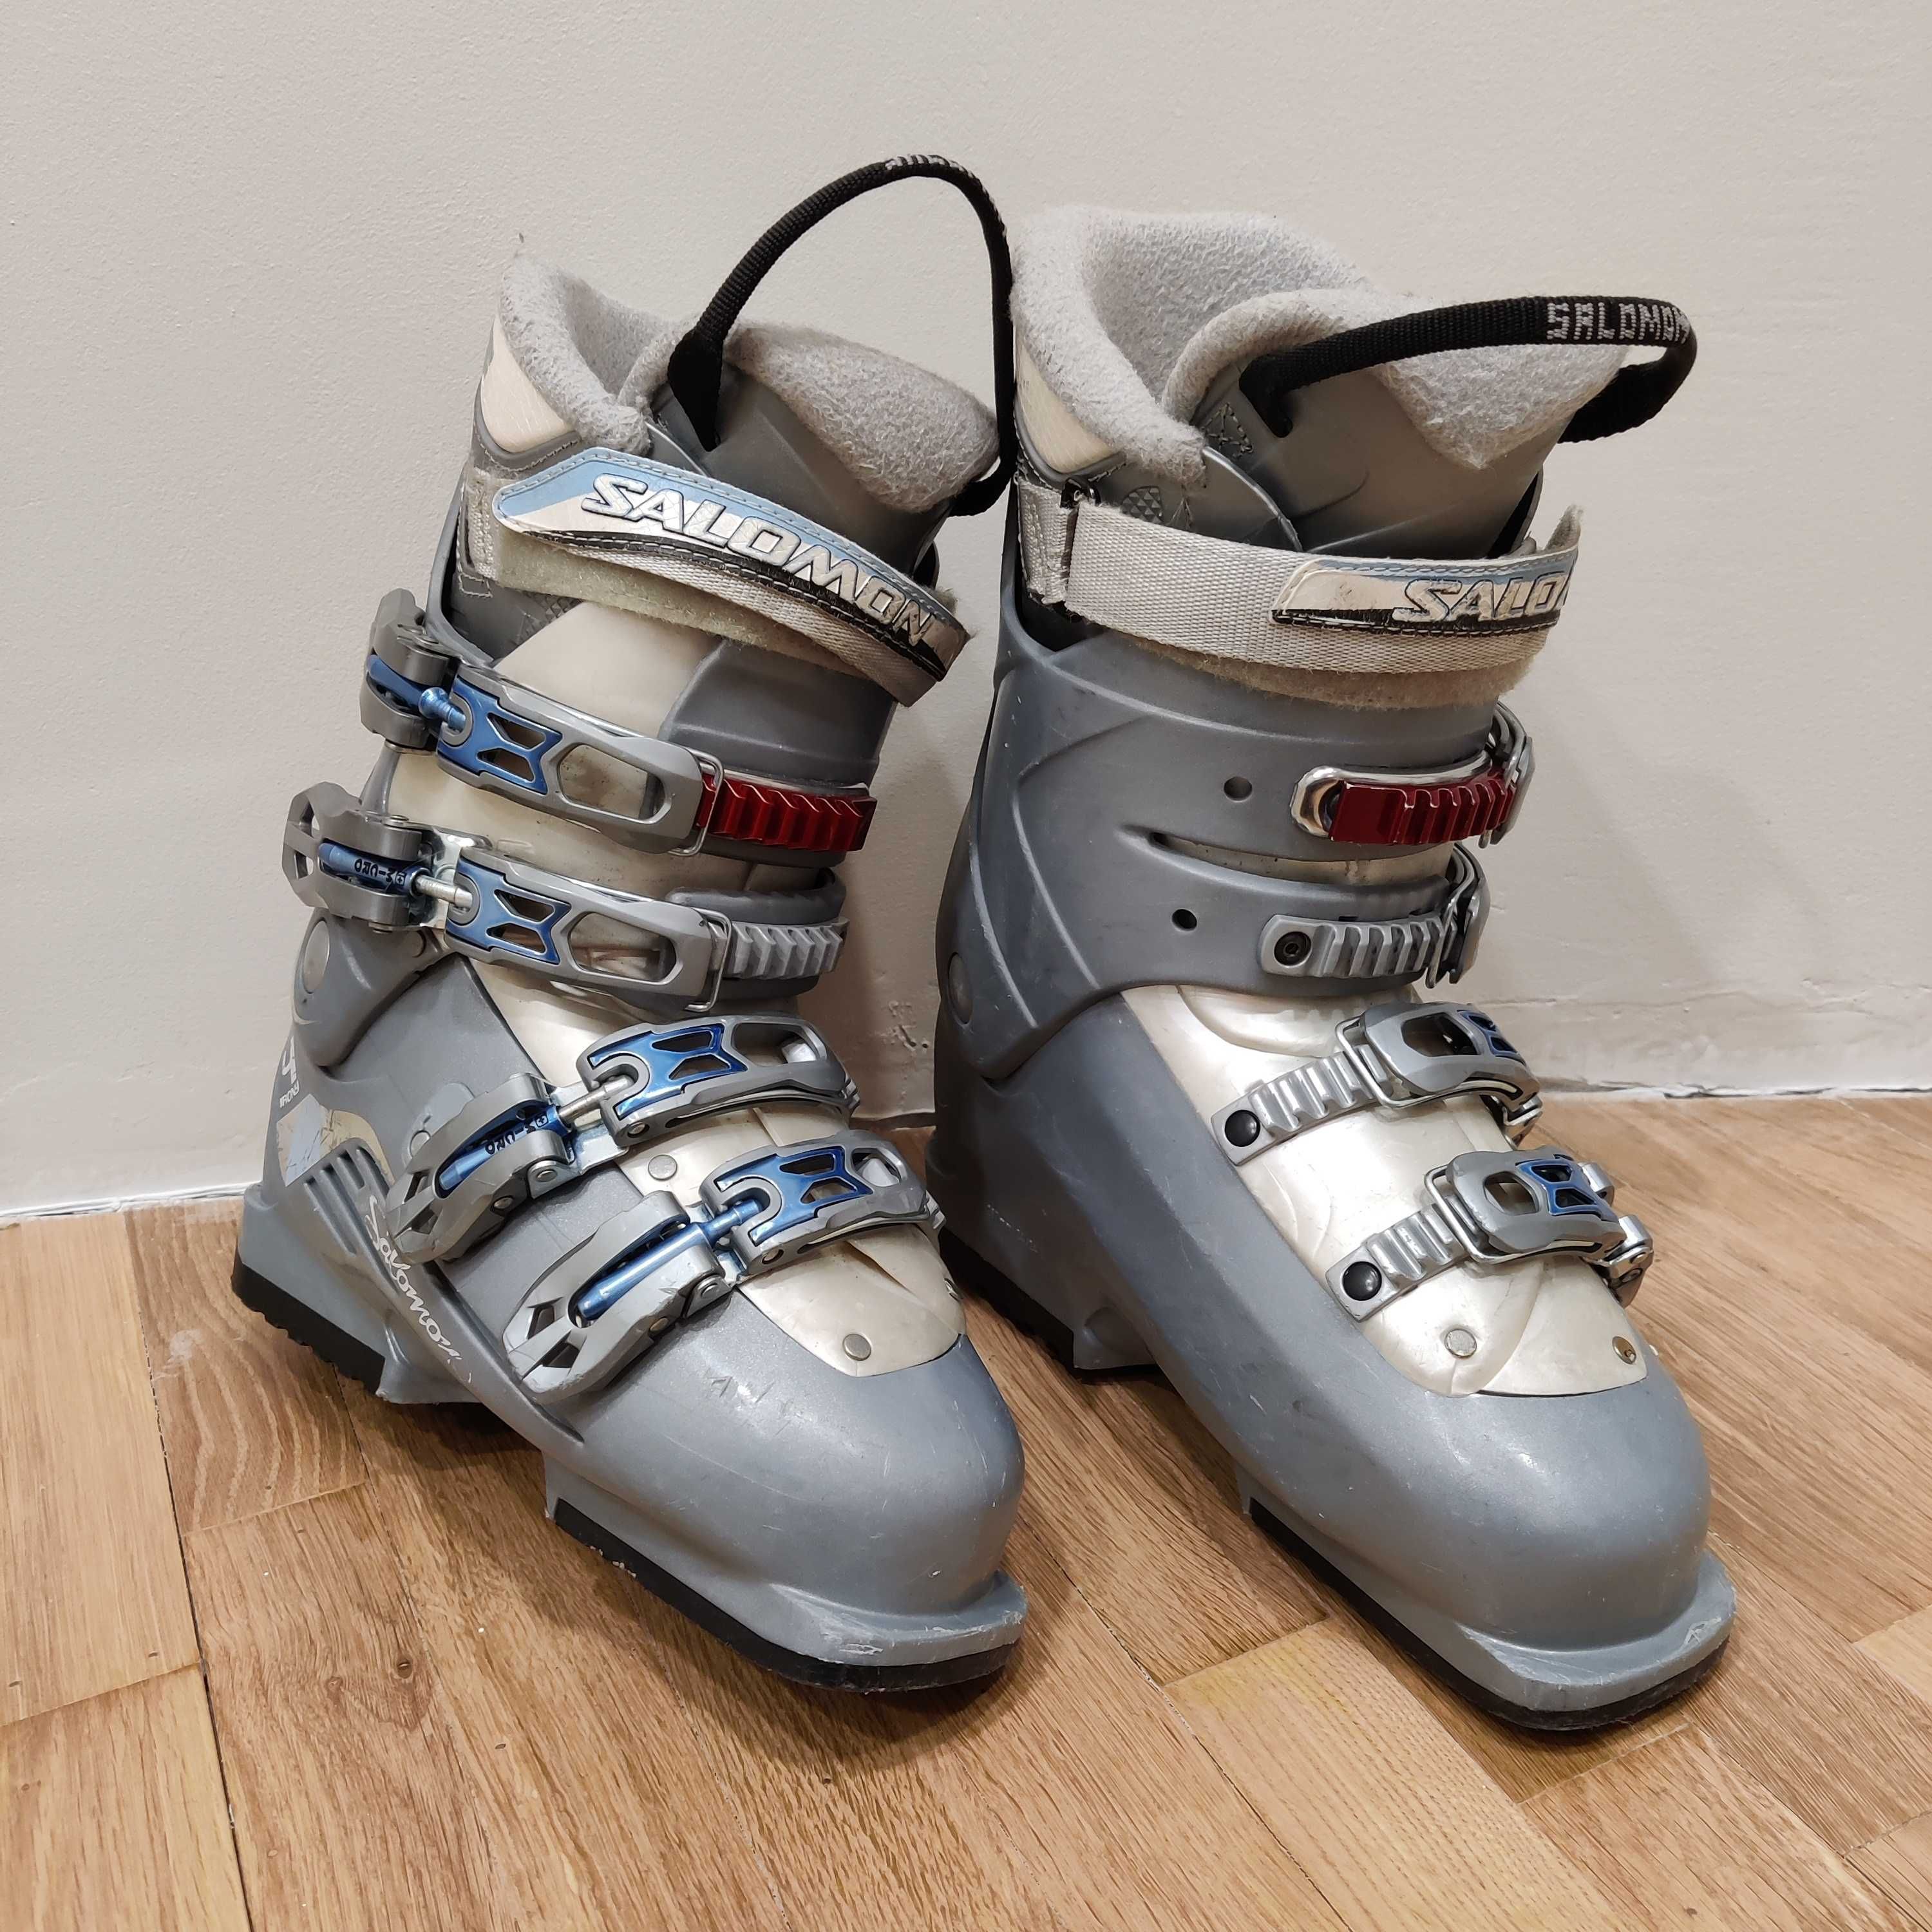 Горные лыжи женские K2, 147 см, крепления и ботинки.